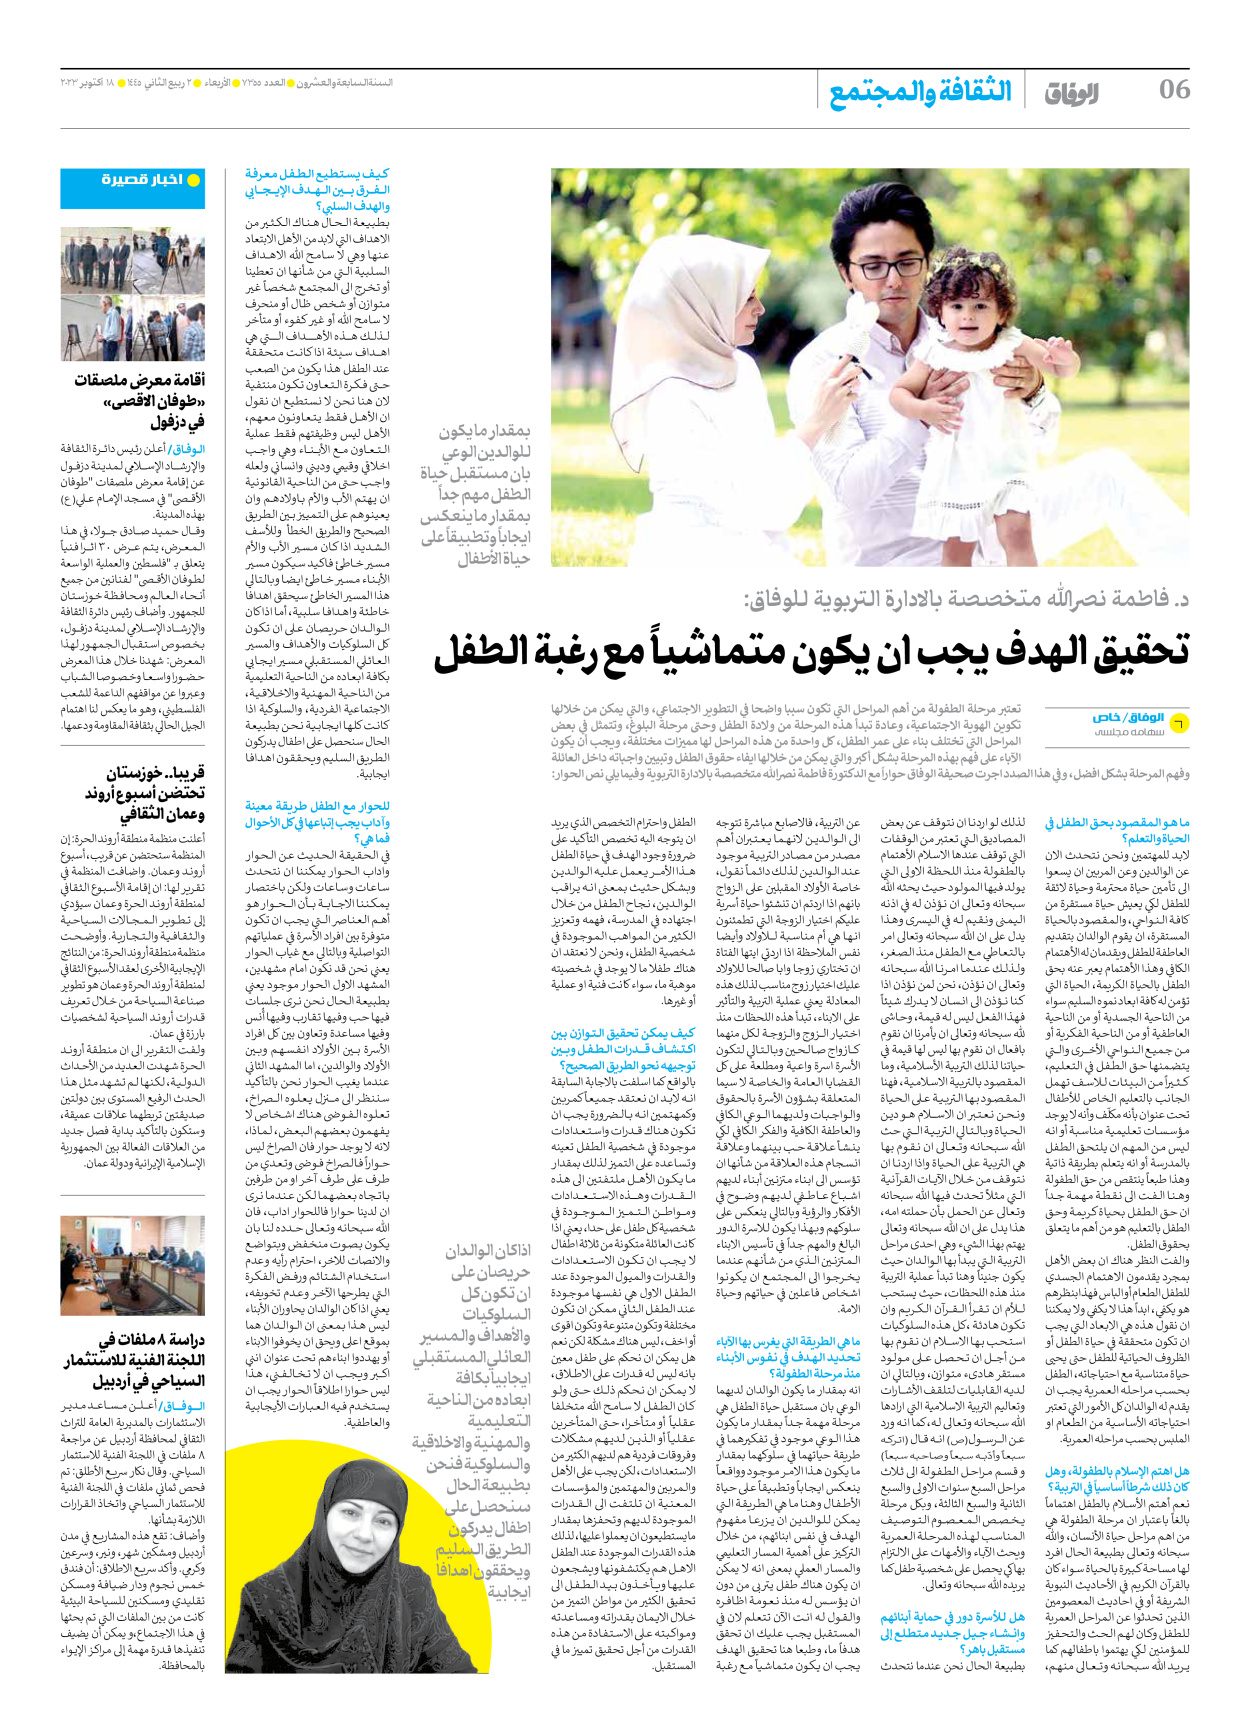 صحیفة ایران الدولیة الوفاق - العدد سبعة آلاف وثلاثمائة وخمسة وخمسون - ١٨ أكتوبر ٢٠٢٣ - الصفحة ٦